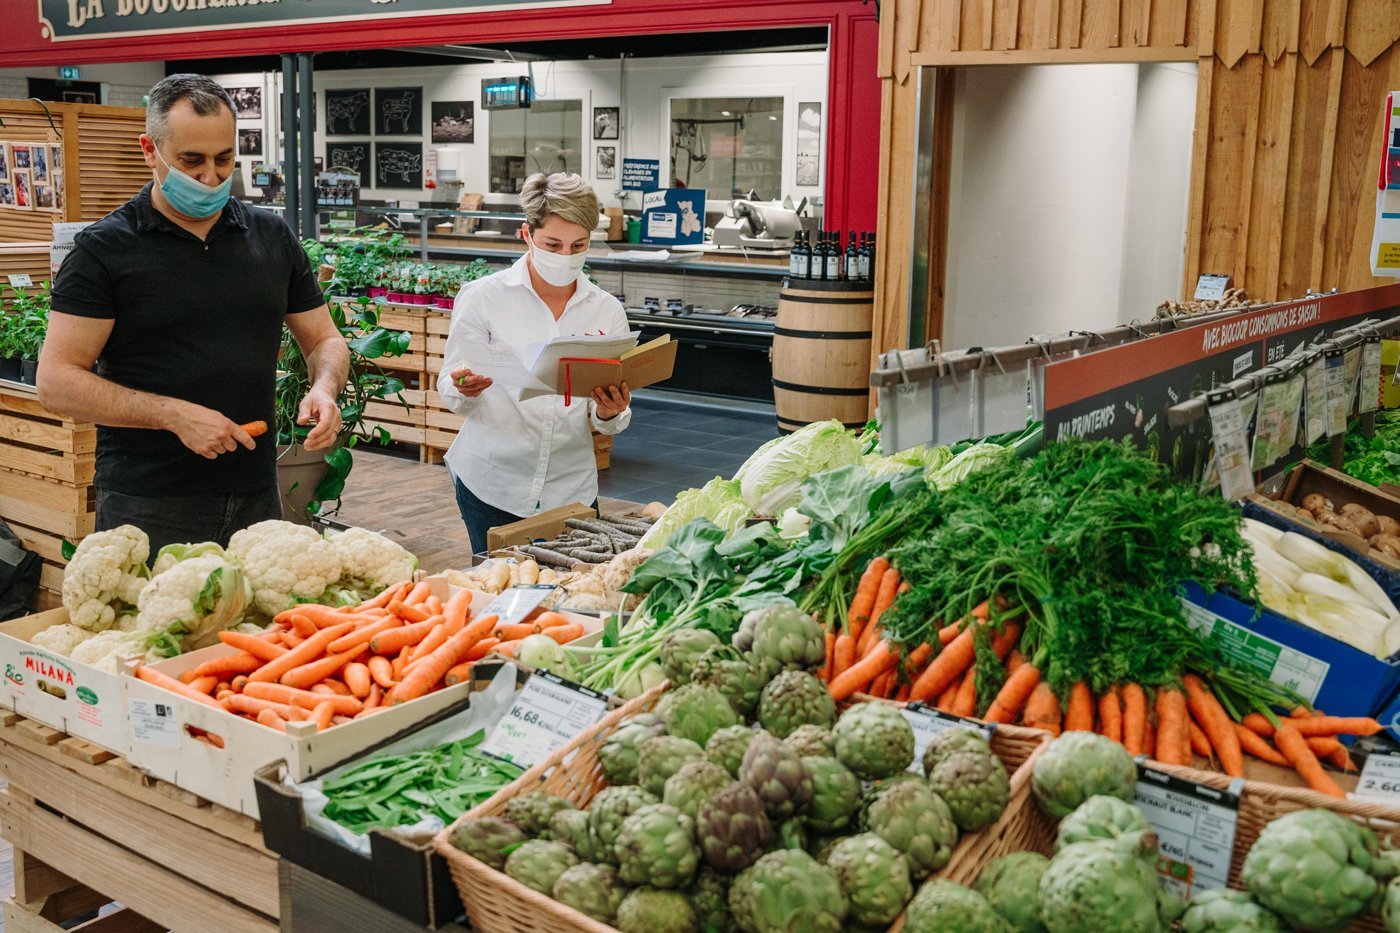 Mann und Frau stehen in der Gemüseabteilung eines Supermarktes